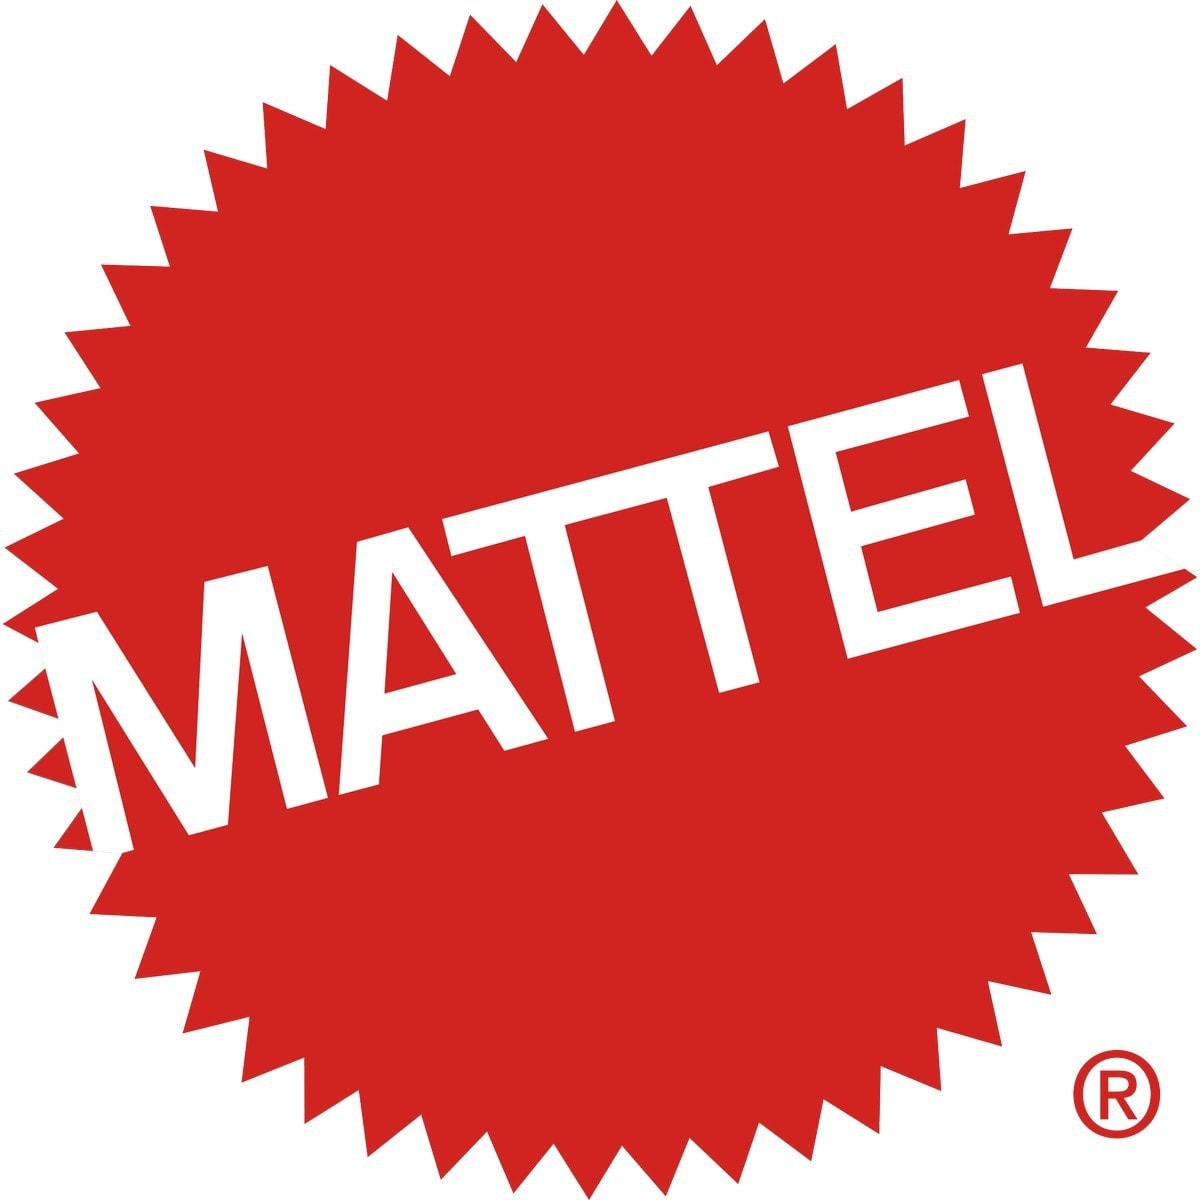 Marketing Mix Of Mattel Mattel Marketing and 4 of